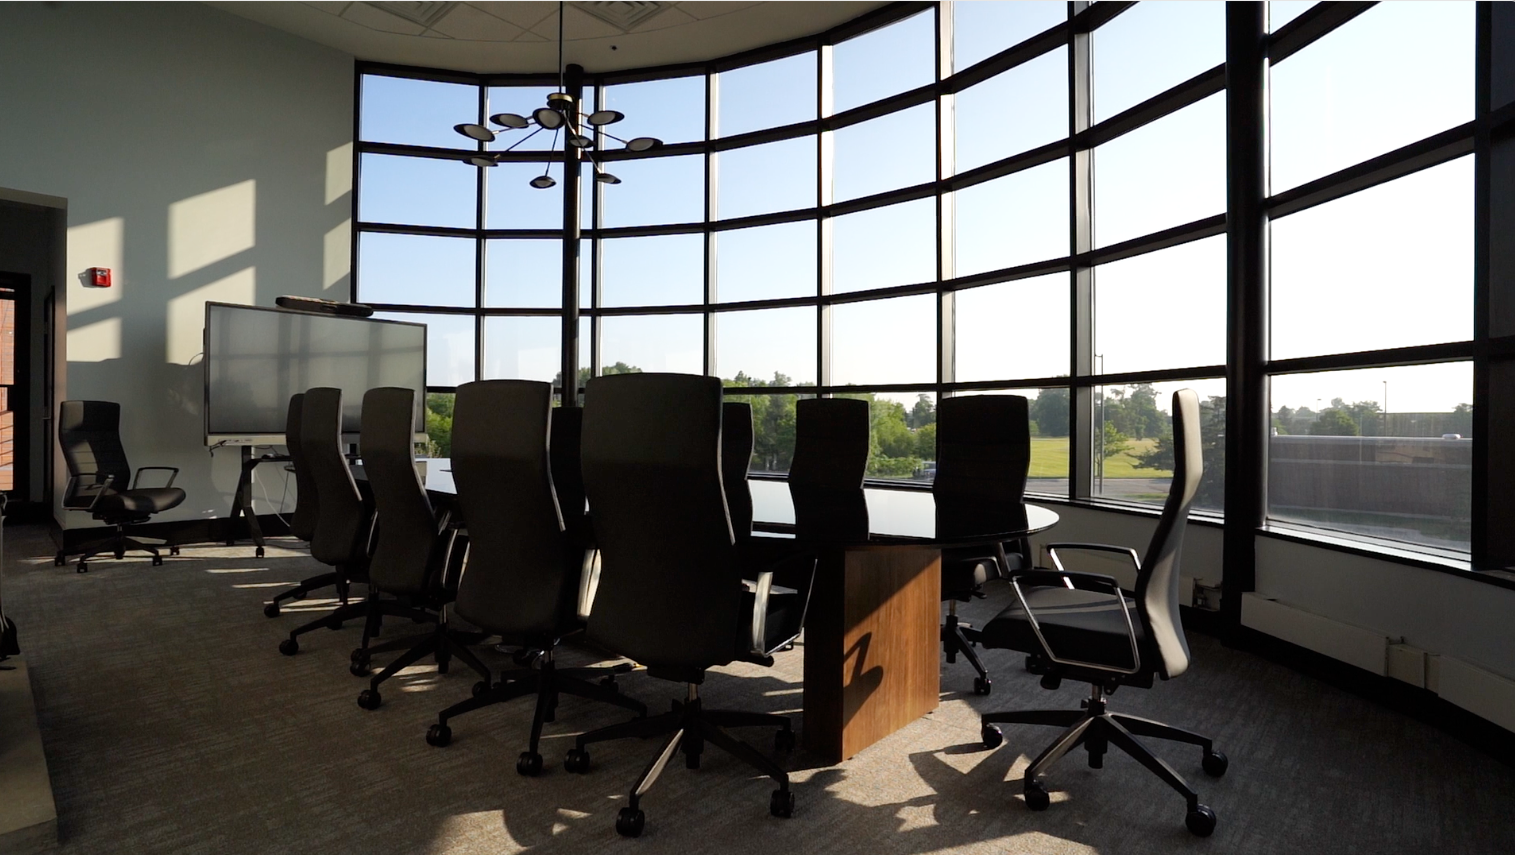 The BAM Companies Executive Boardroom